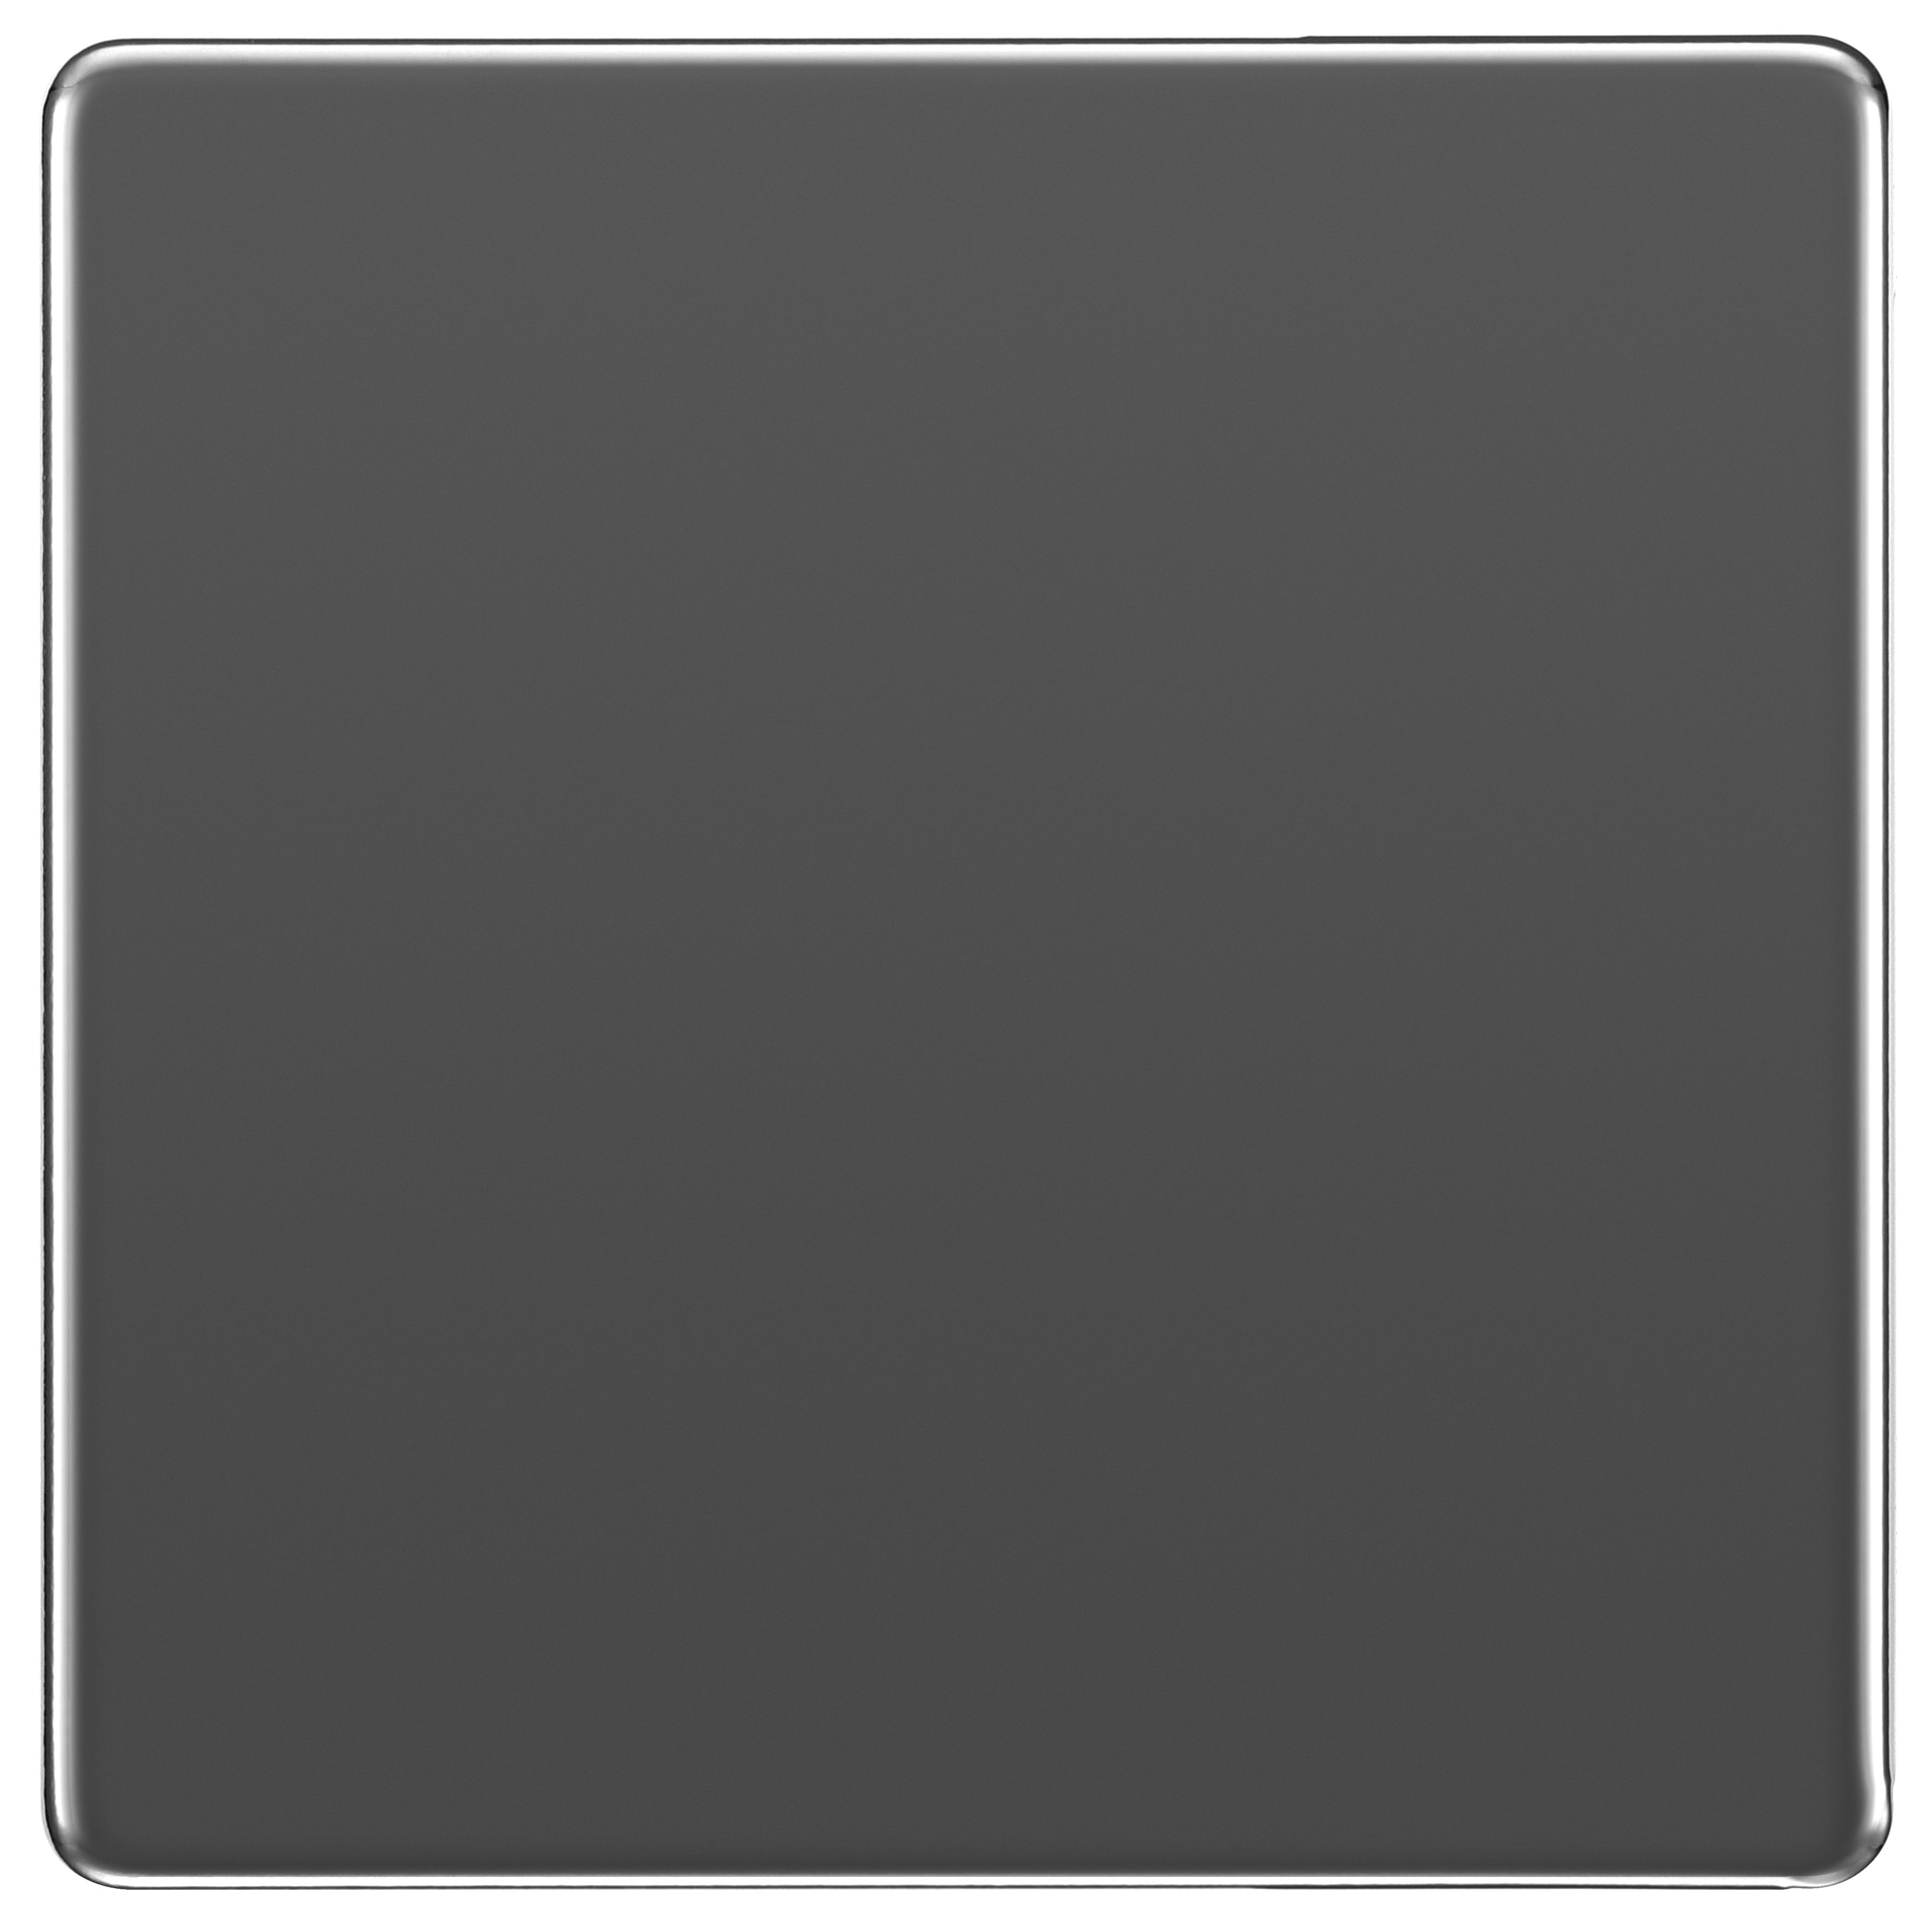 Image of BG Screwless Flatplate Black Nickel 1 Gang Blank Plate